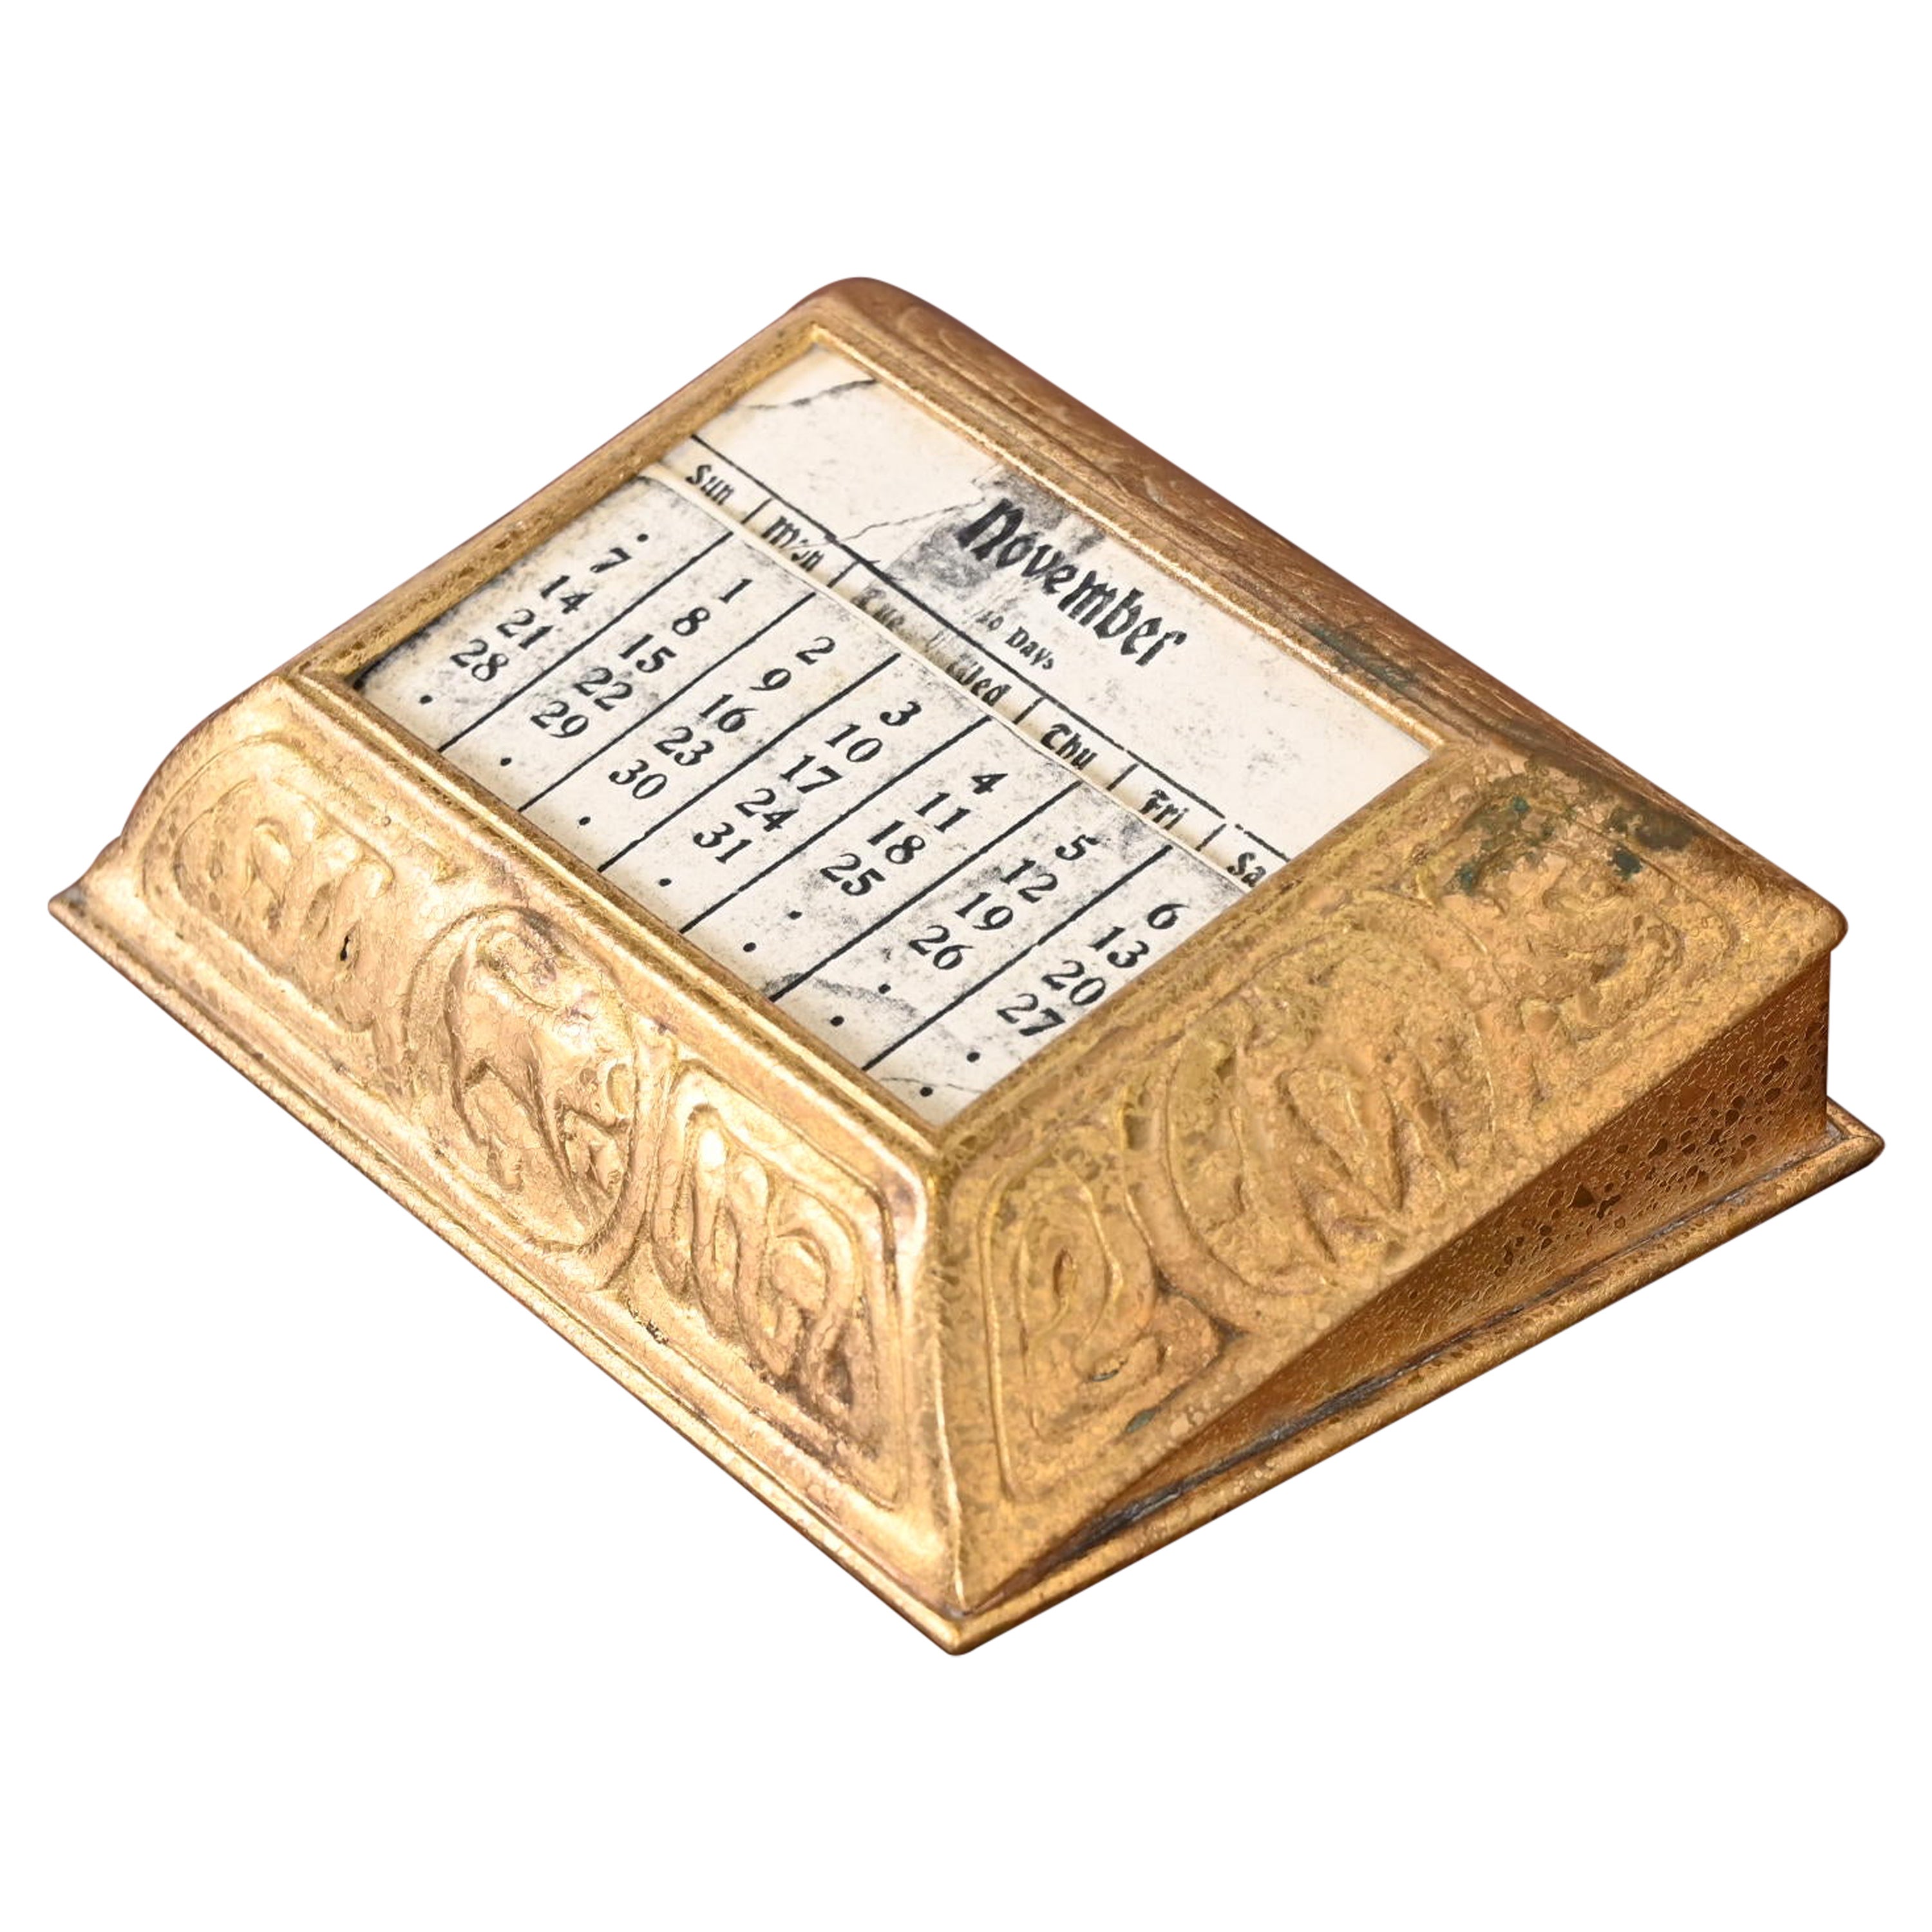 Tiffany Studios New York Zodiac Bronze Schreibtisch Kalenderhalter oder Bilderrahmen aus Bronze